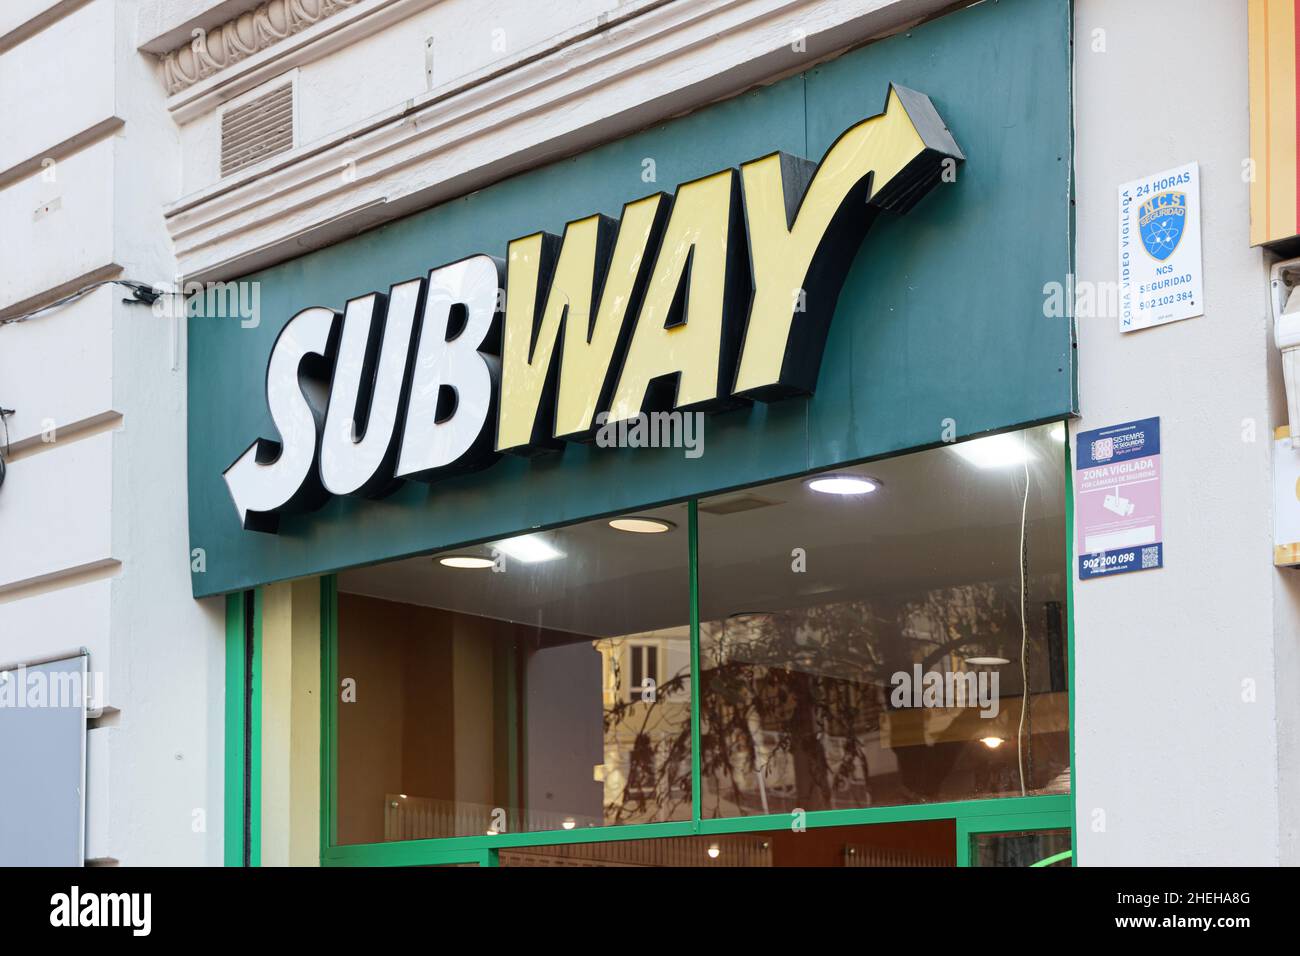 VALENCIA, ESPAGNE - 10 JANVIER 2022: Subway est une franchise de restauration rapide américaine Banque D'Images